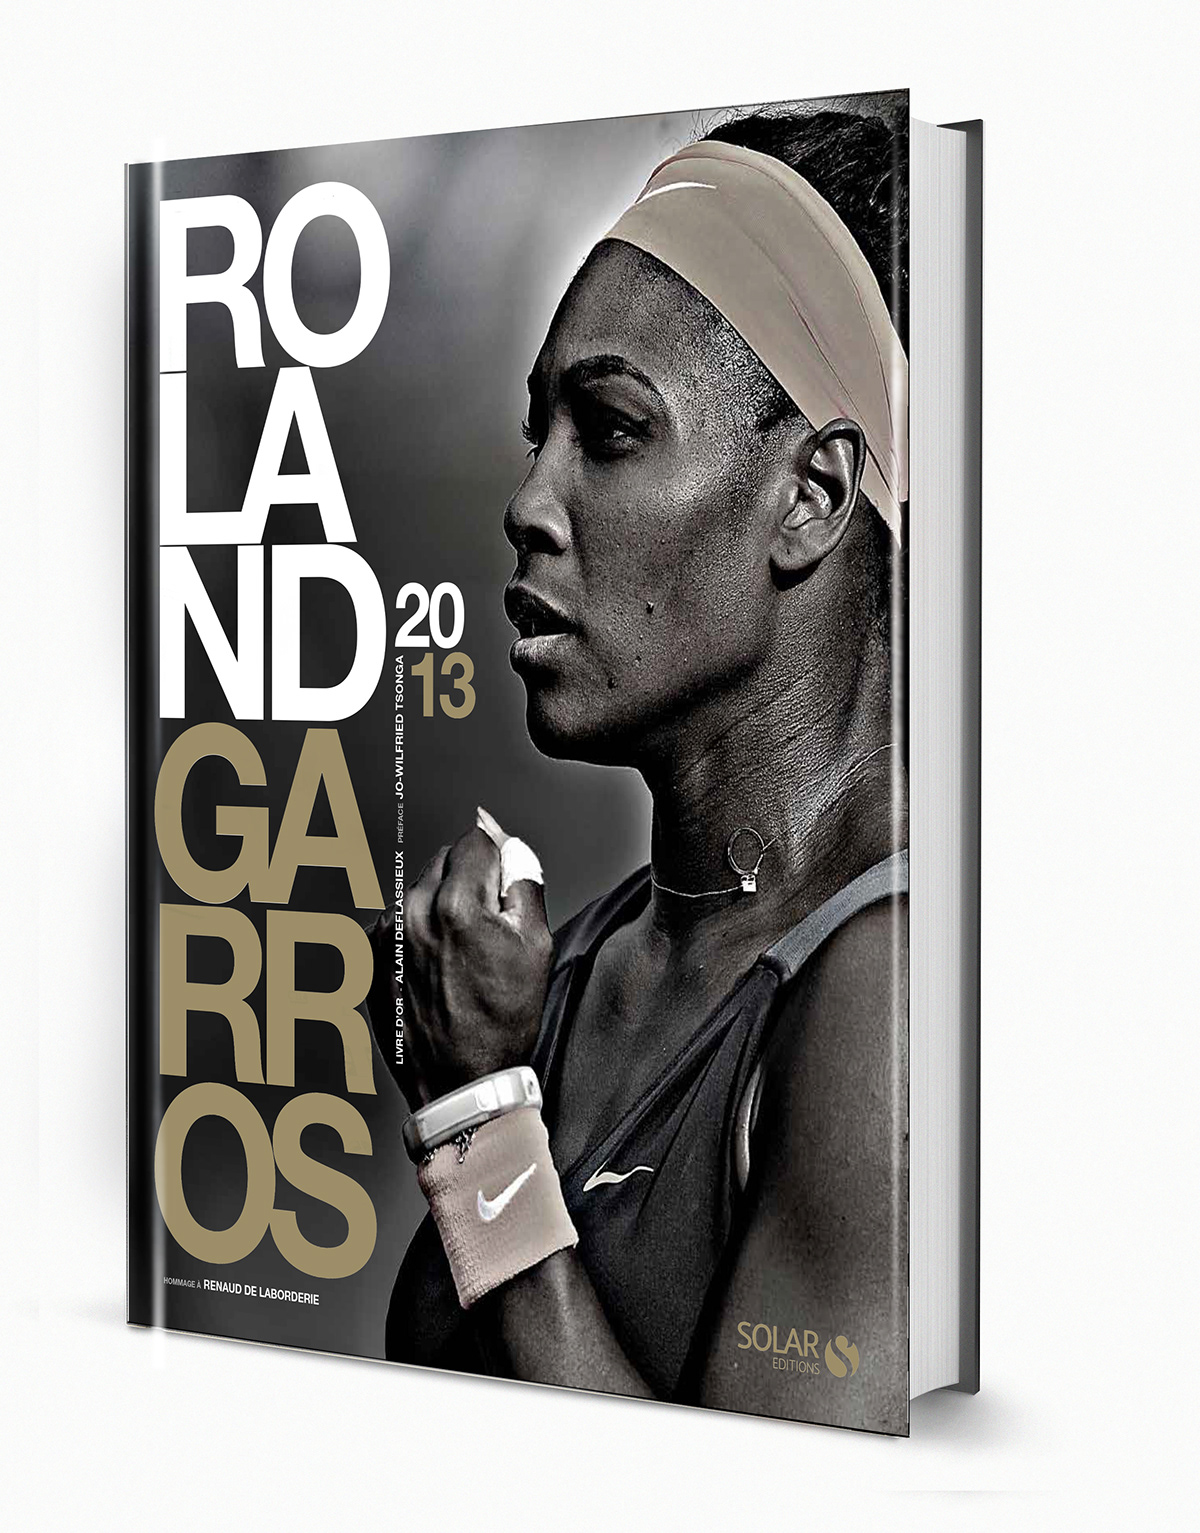 Roland Garros livres books sport tennis